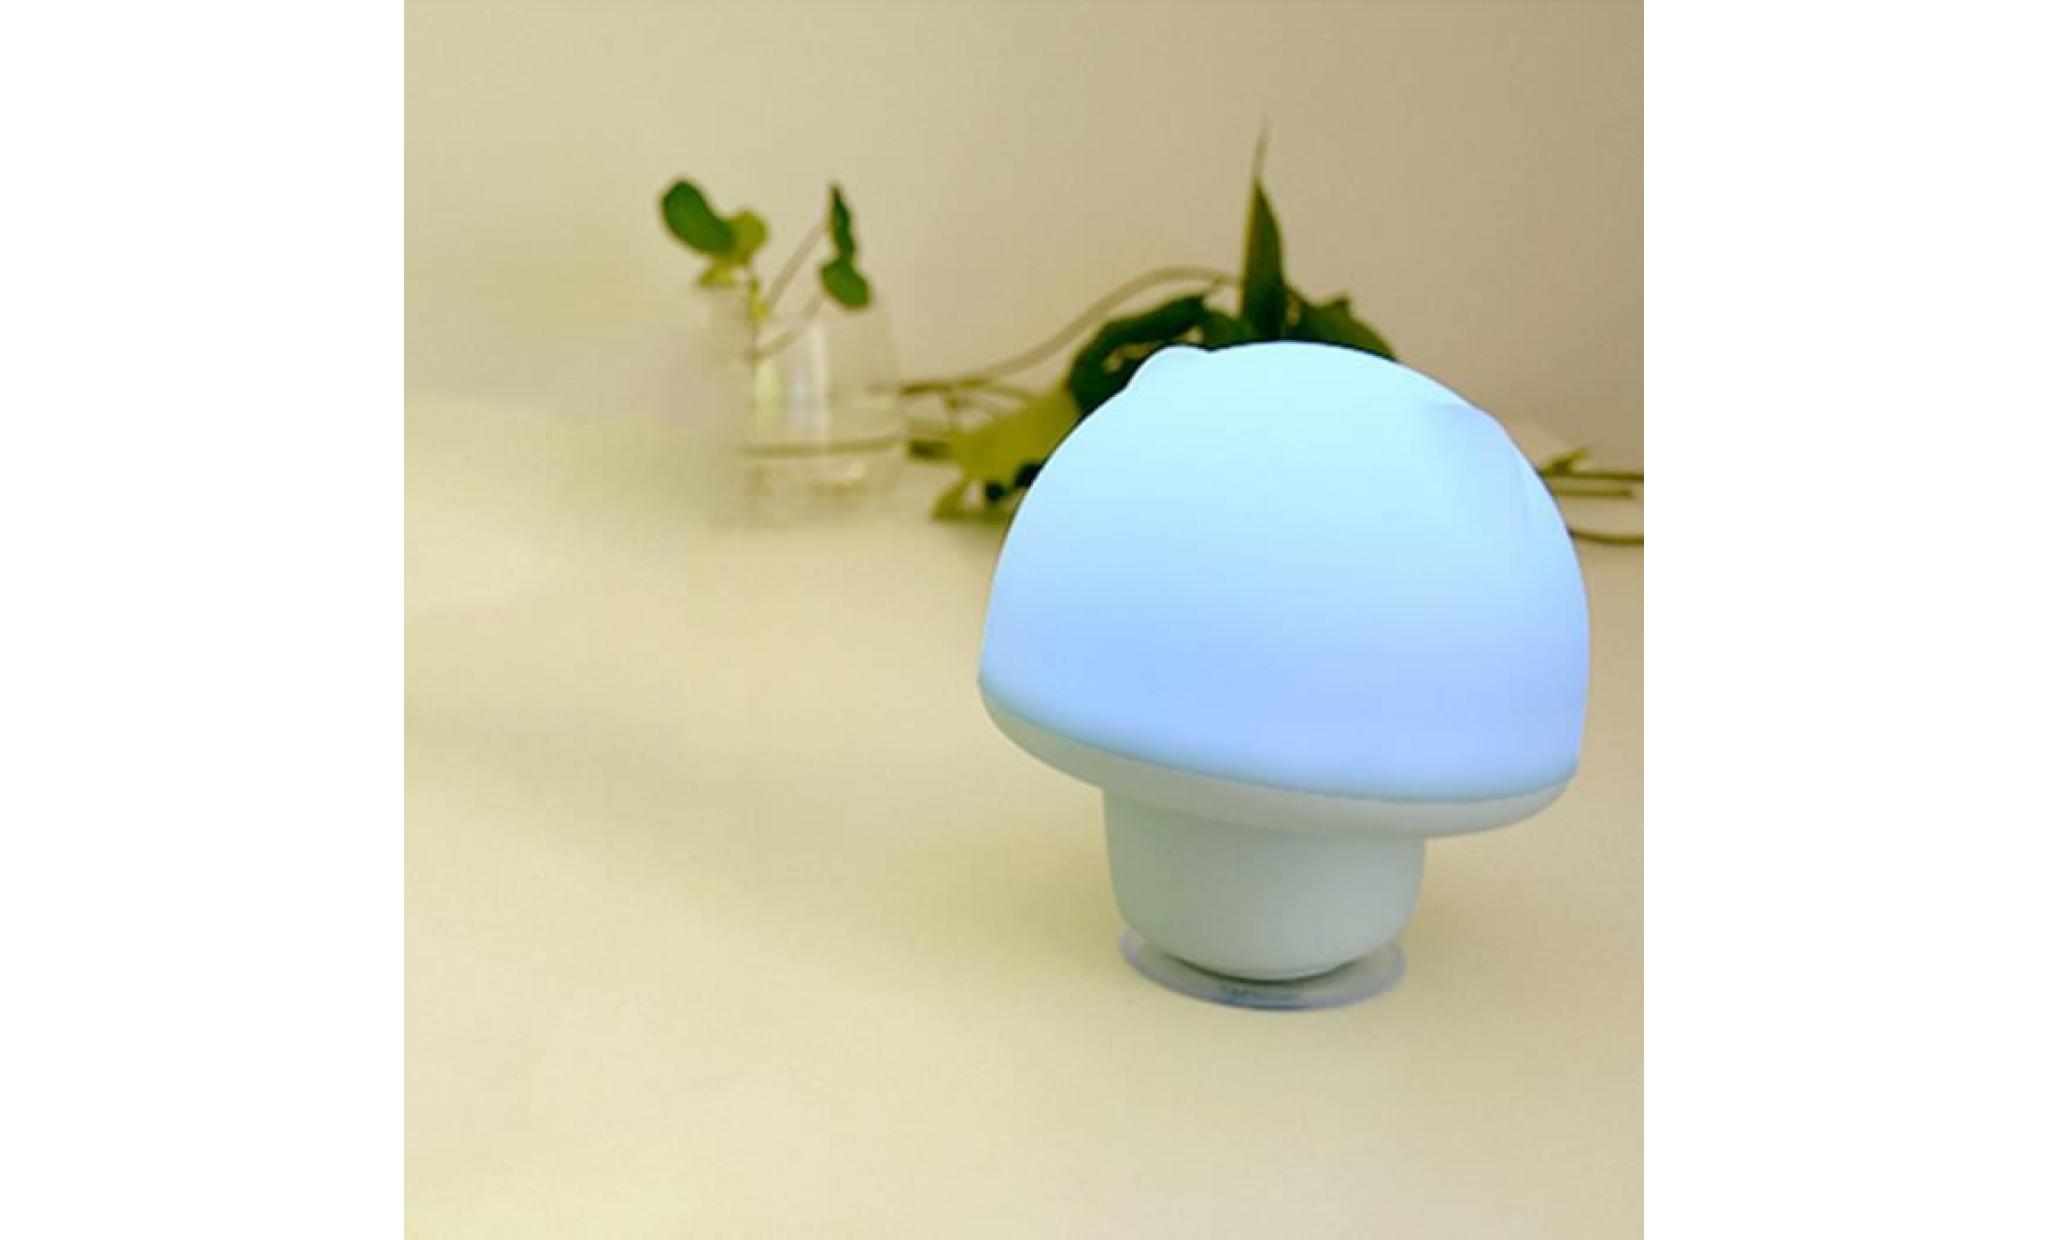 love@ silicone night light enfants lampe sucker design usb rechargeable tap nouveau bleu_mosakog2536